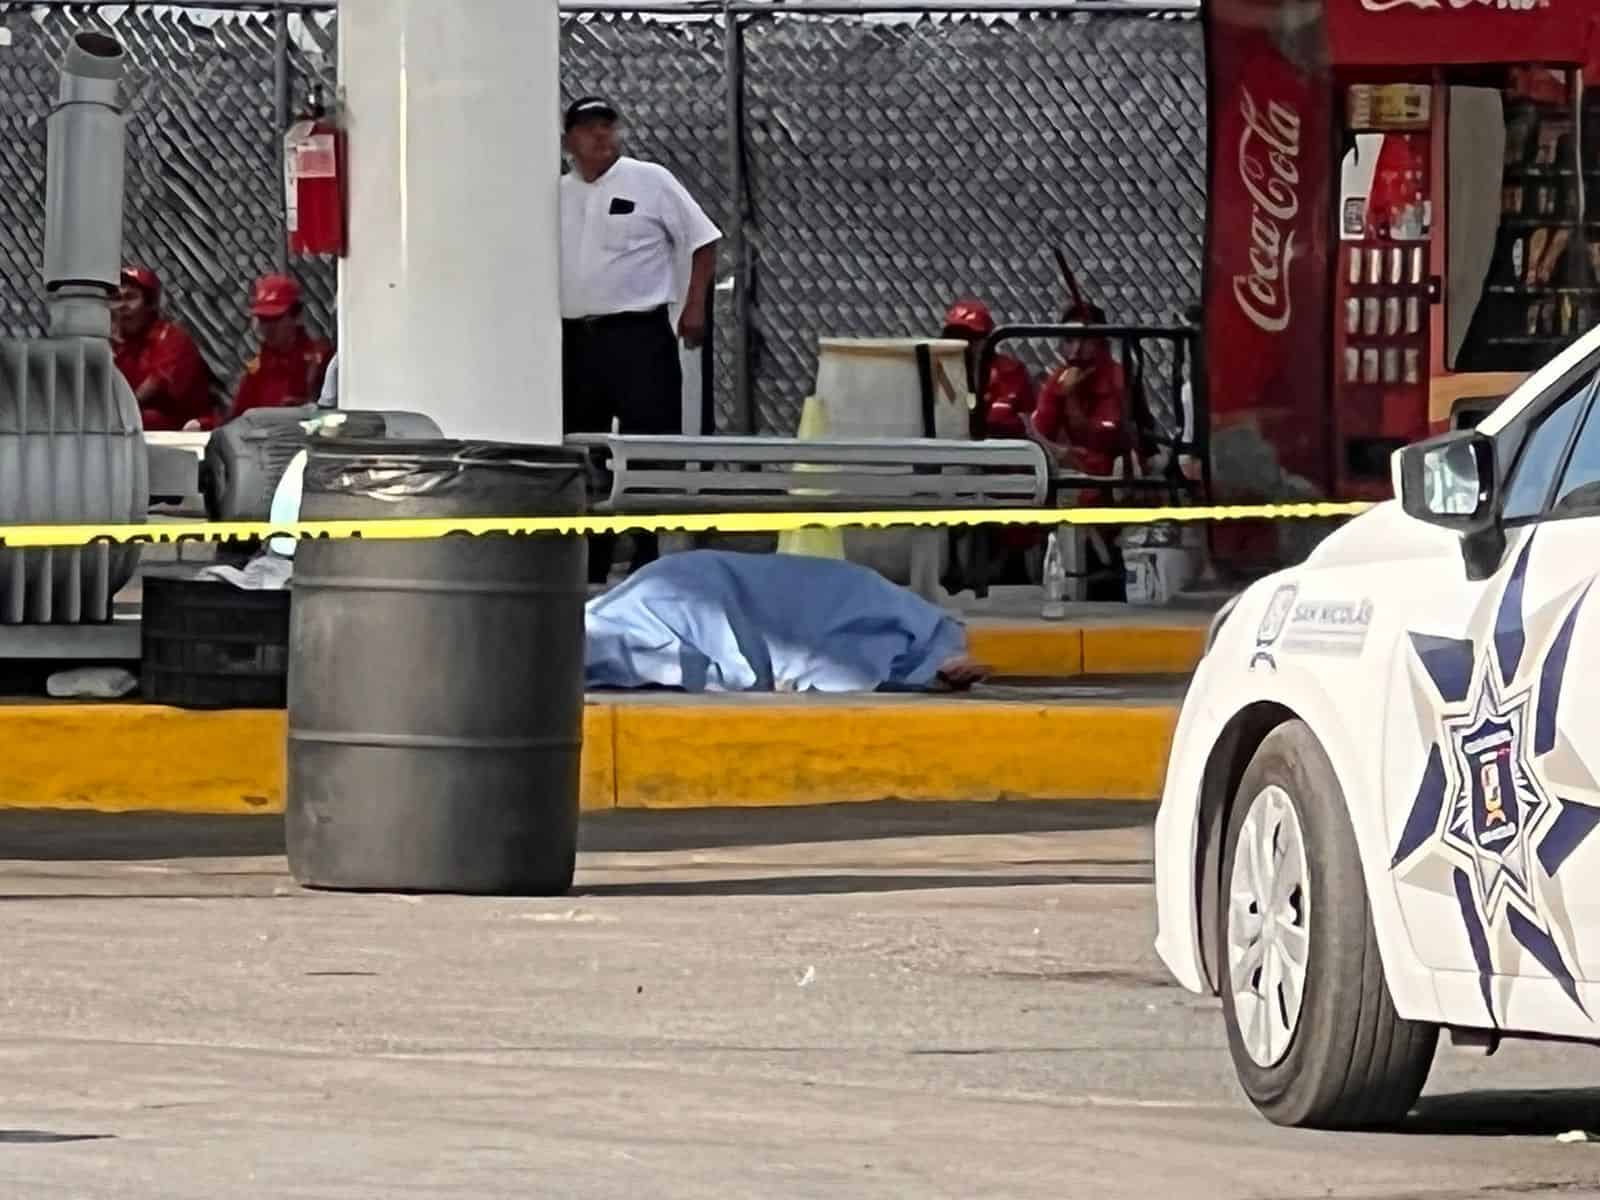 Un hombre fue acribillado a balazos y su cuerpo quedó cercas de una banca donde esperaba a que lavaran su vehículo en un Carwash